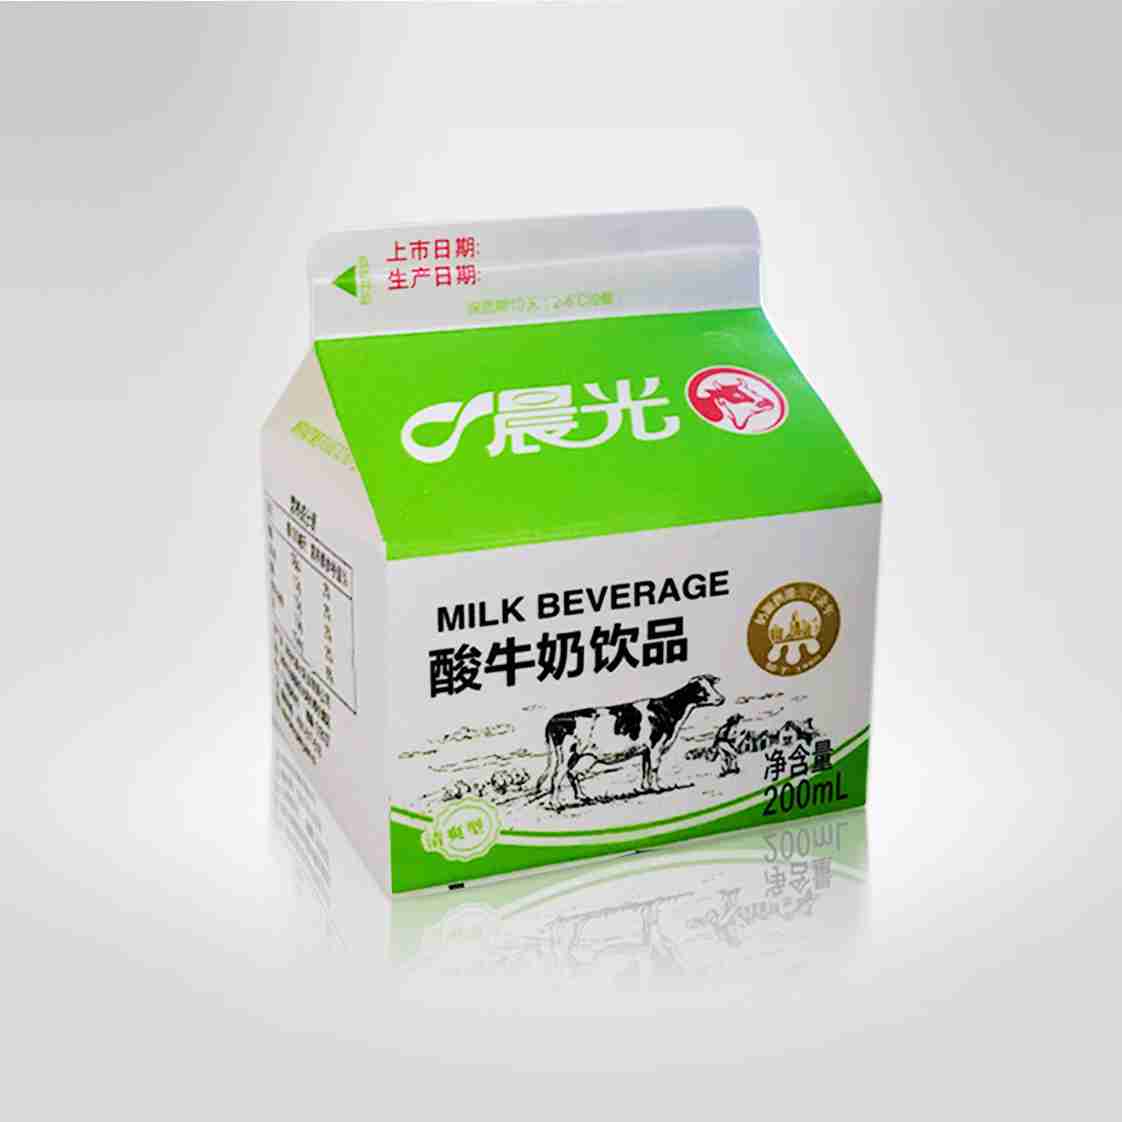 深圳质量最好的粮油牛奶批发供应商